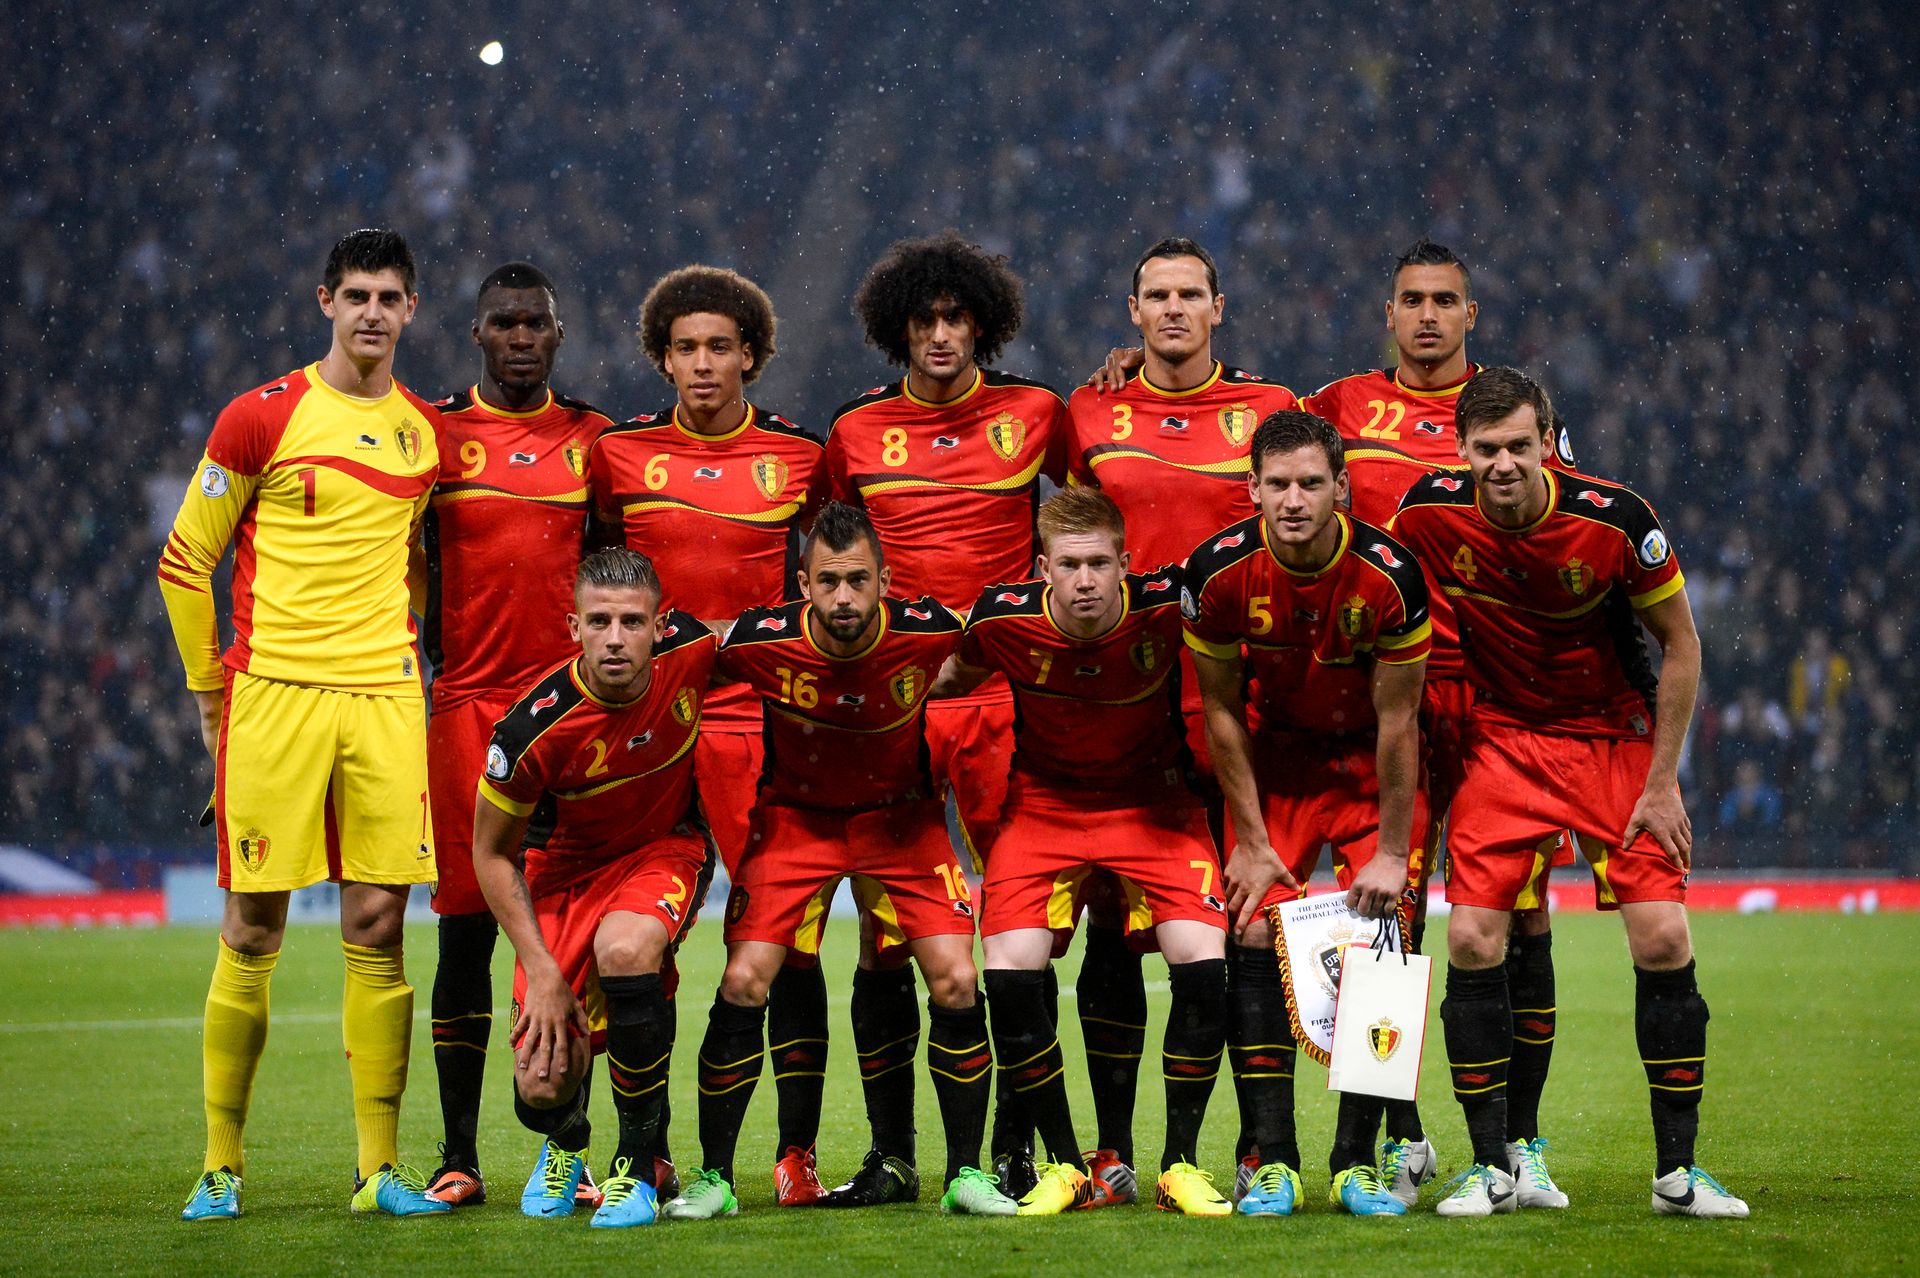 "La Belgique ? Une équipe agréable à voir jouer"